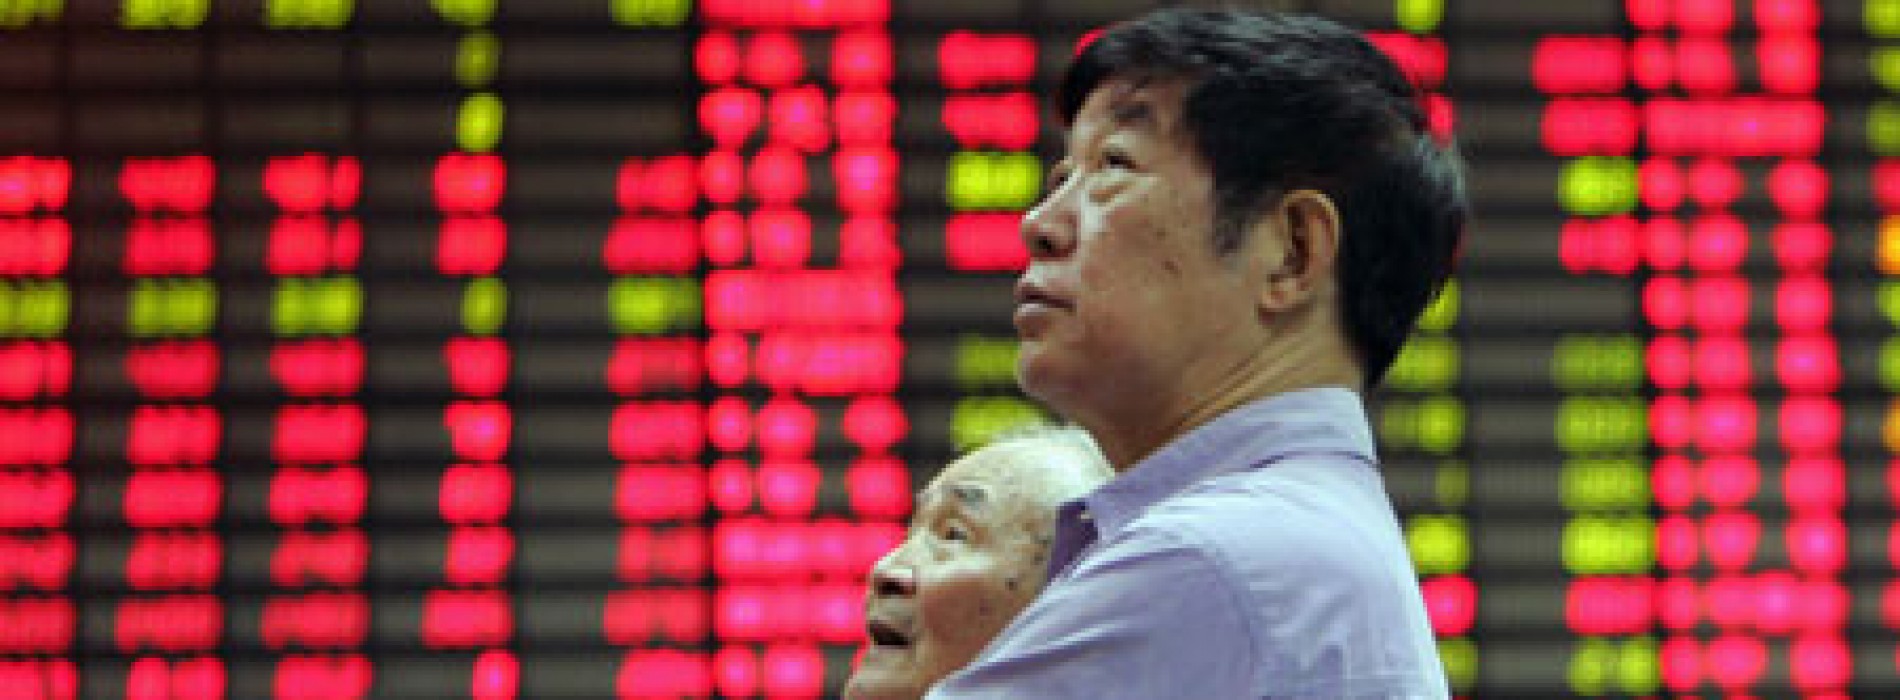 Poranny komentarz giełdowy – słaba sesja w Chinach, FED nieco rozczarował rynki